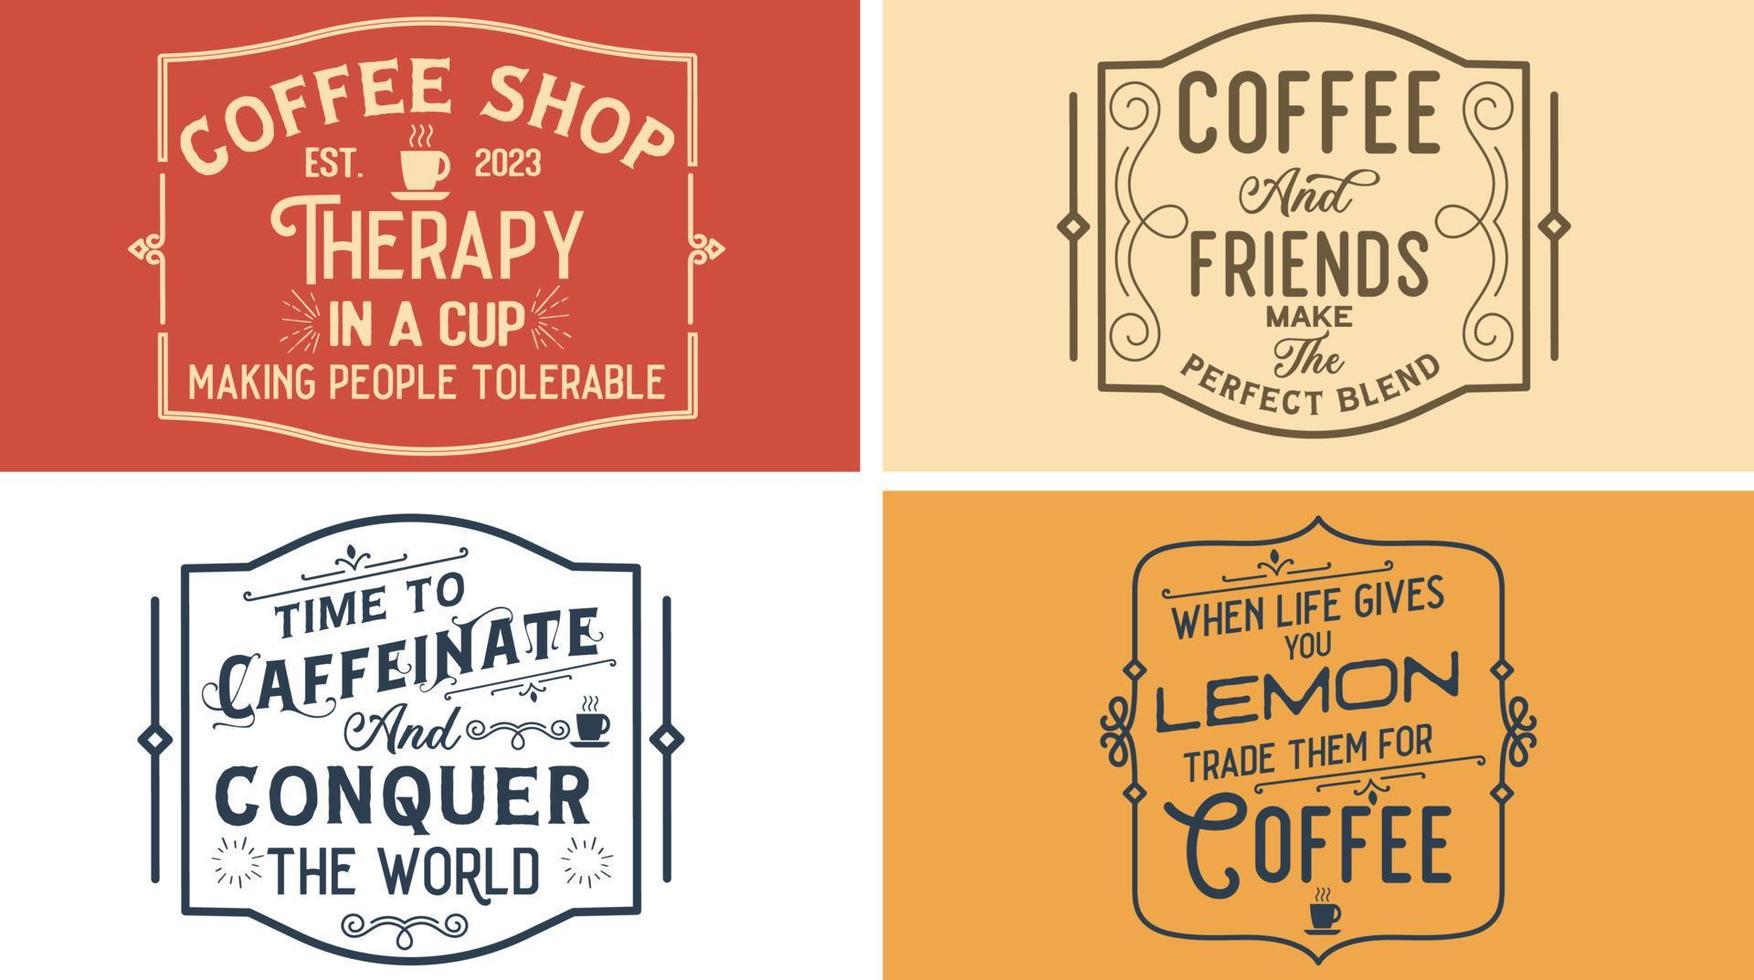 conception graphique vectorielle de signe de café vintage pour café. thérapie dans une tasse, rendant les gens tolérables. le café et les amis font le mélange parfait. le temps de caféiner et de conquérir le monde. vecteur